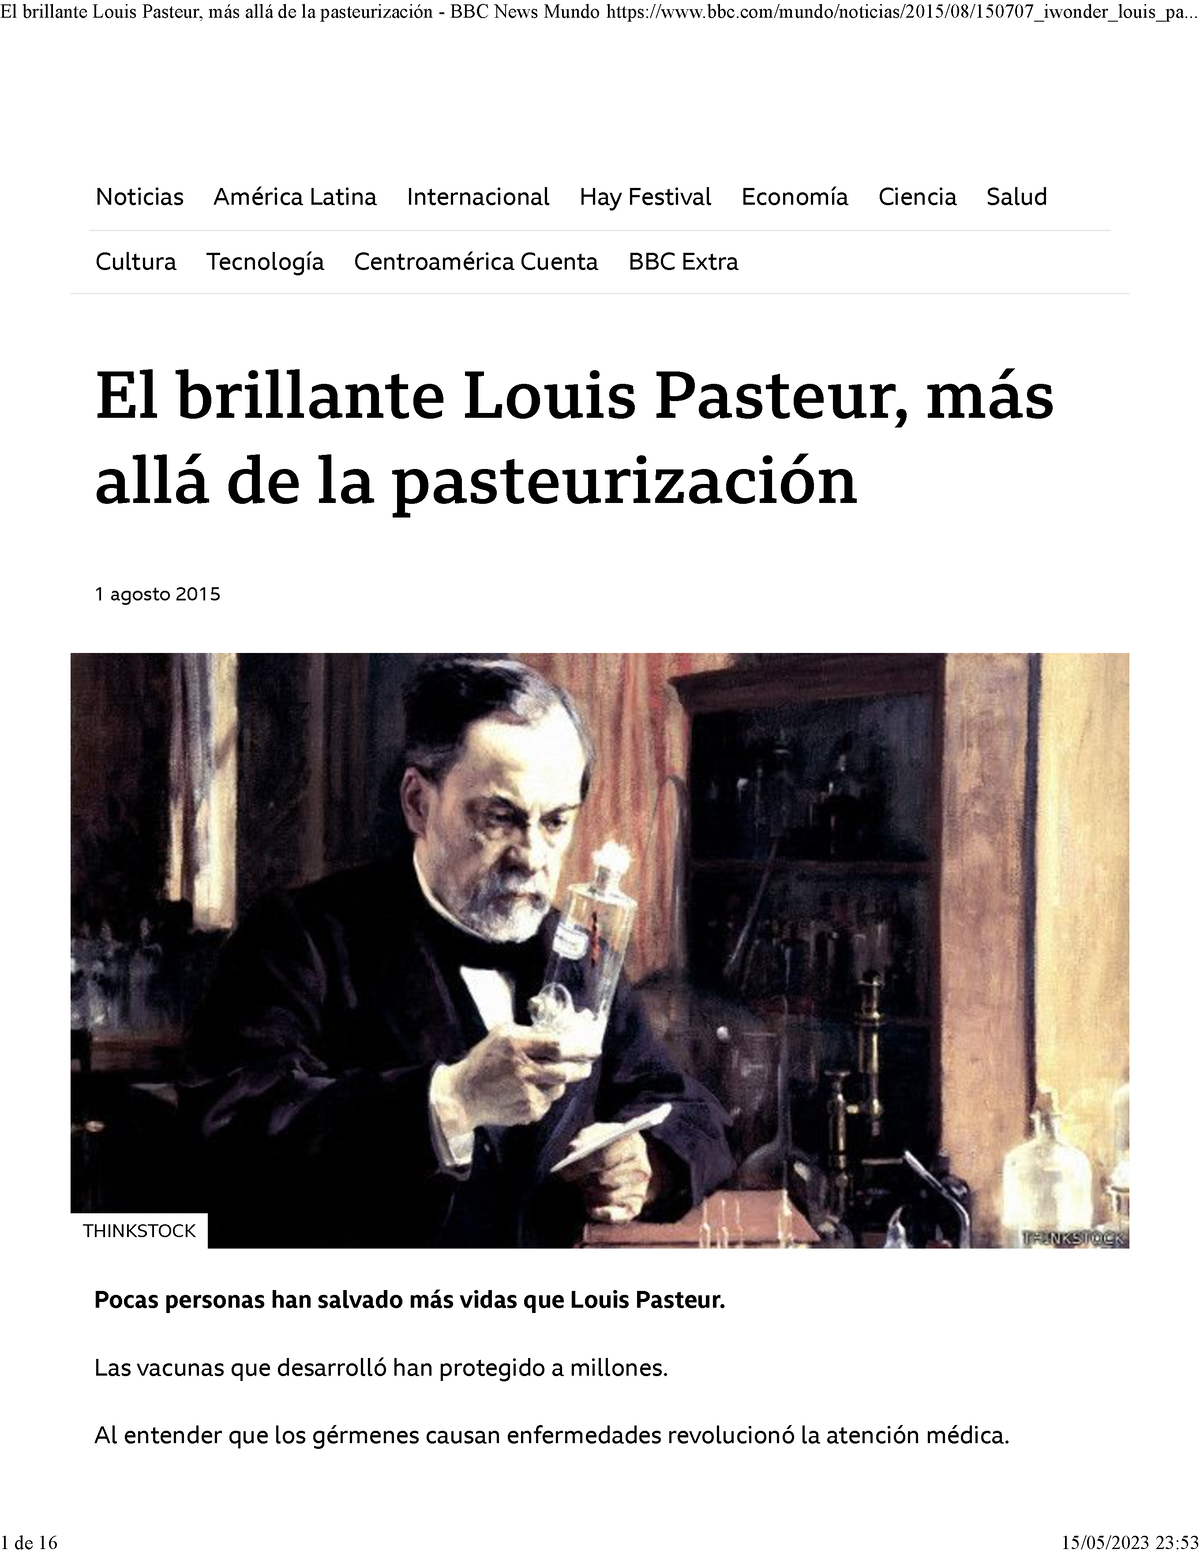 El Brillante Louis Pasteur Más Allá De La Pasteurización Bbc News Mundo El Brillante Louis 5958